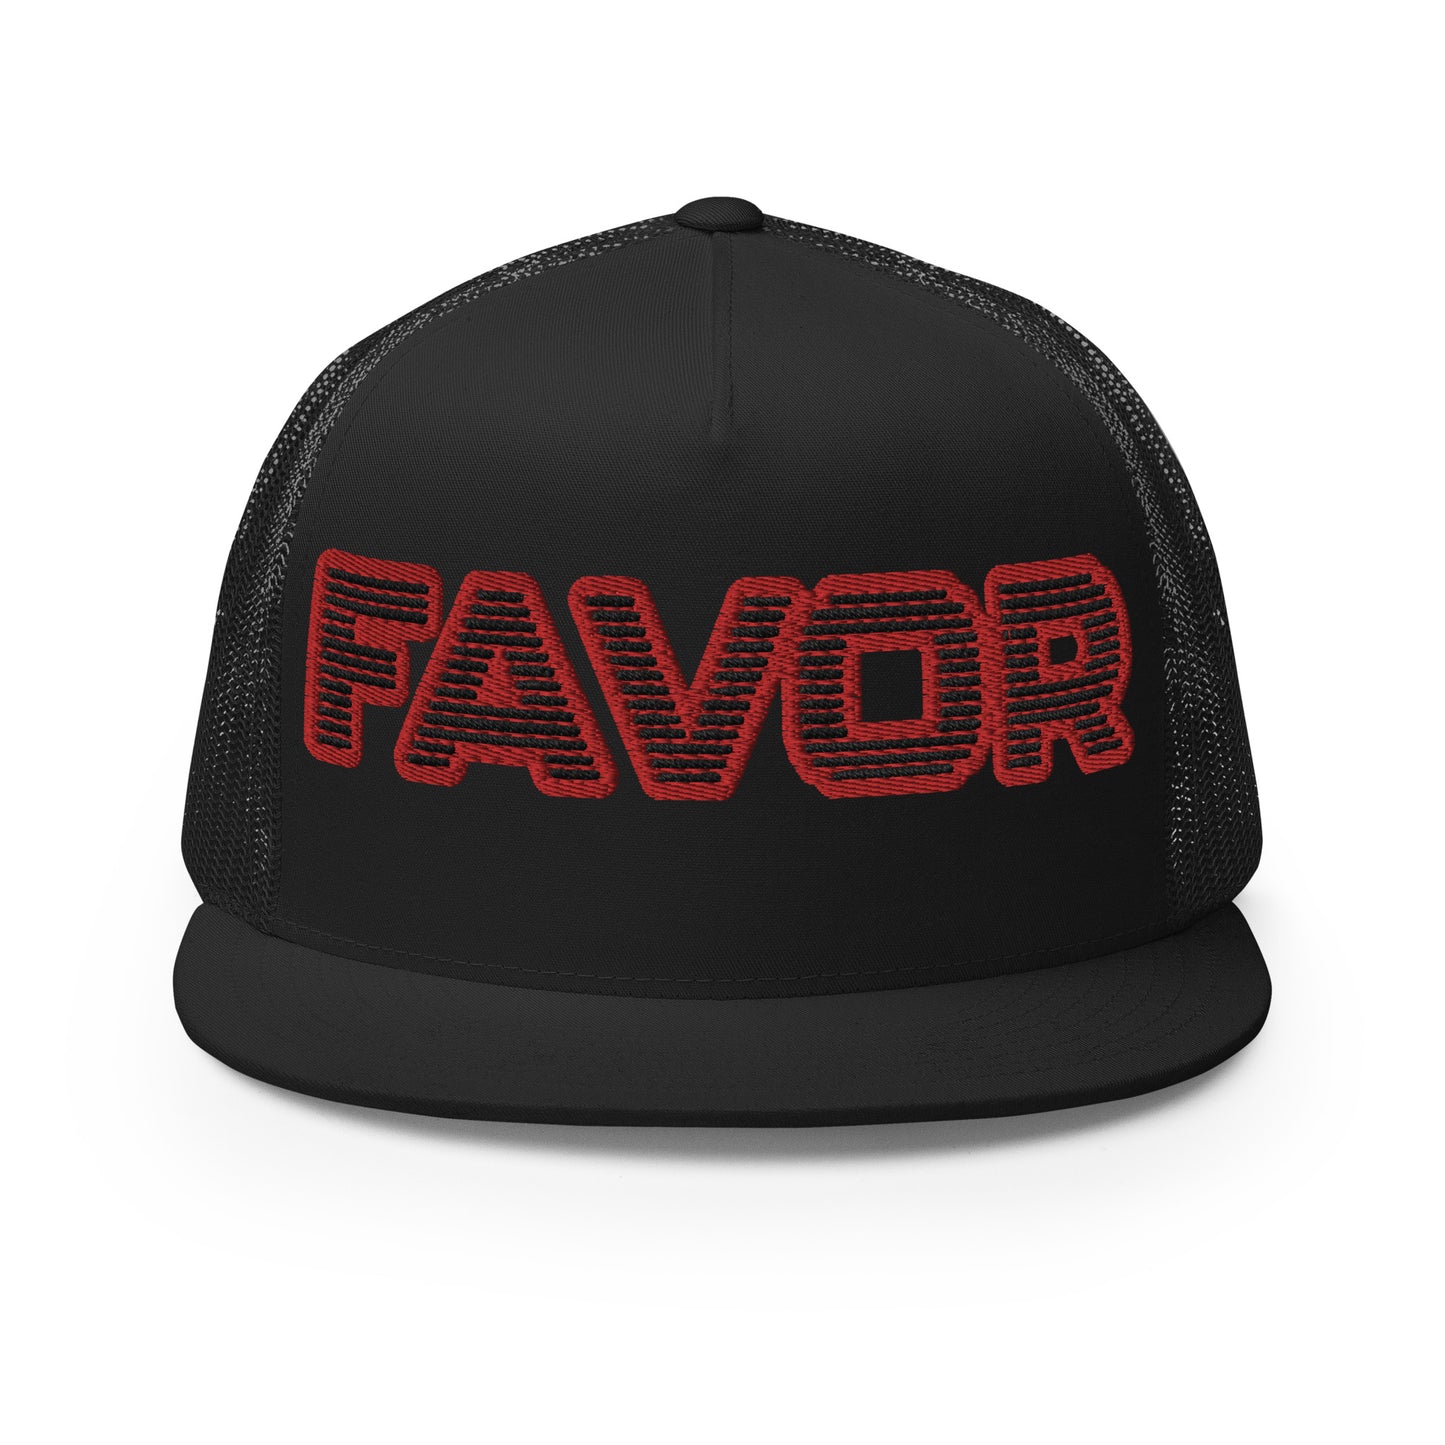 FAVOR- Trucker Cap